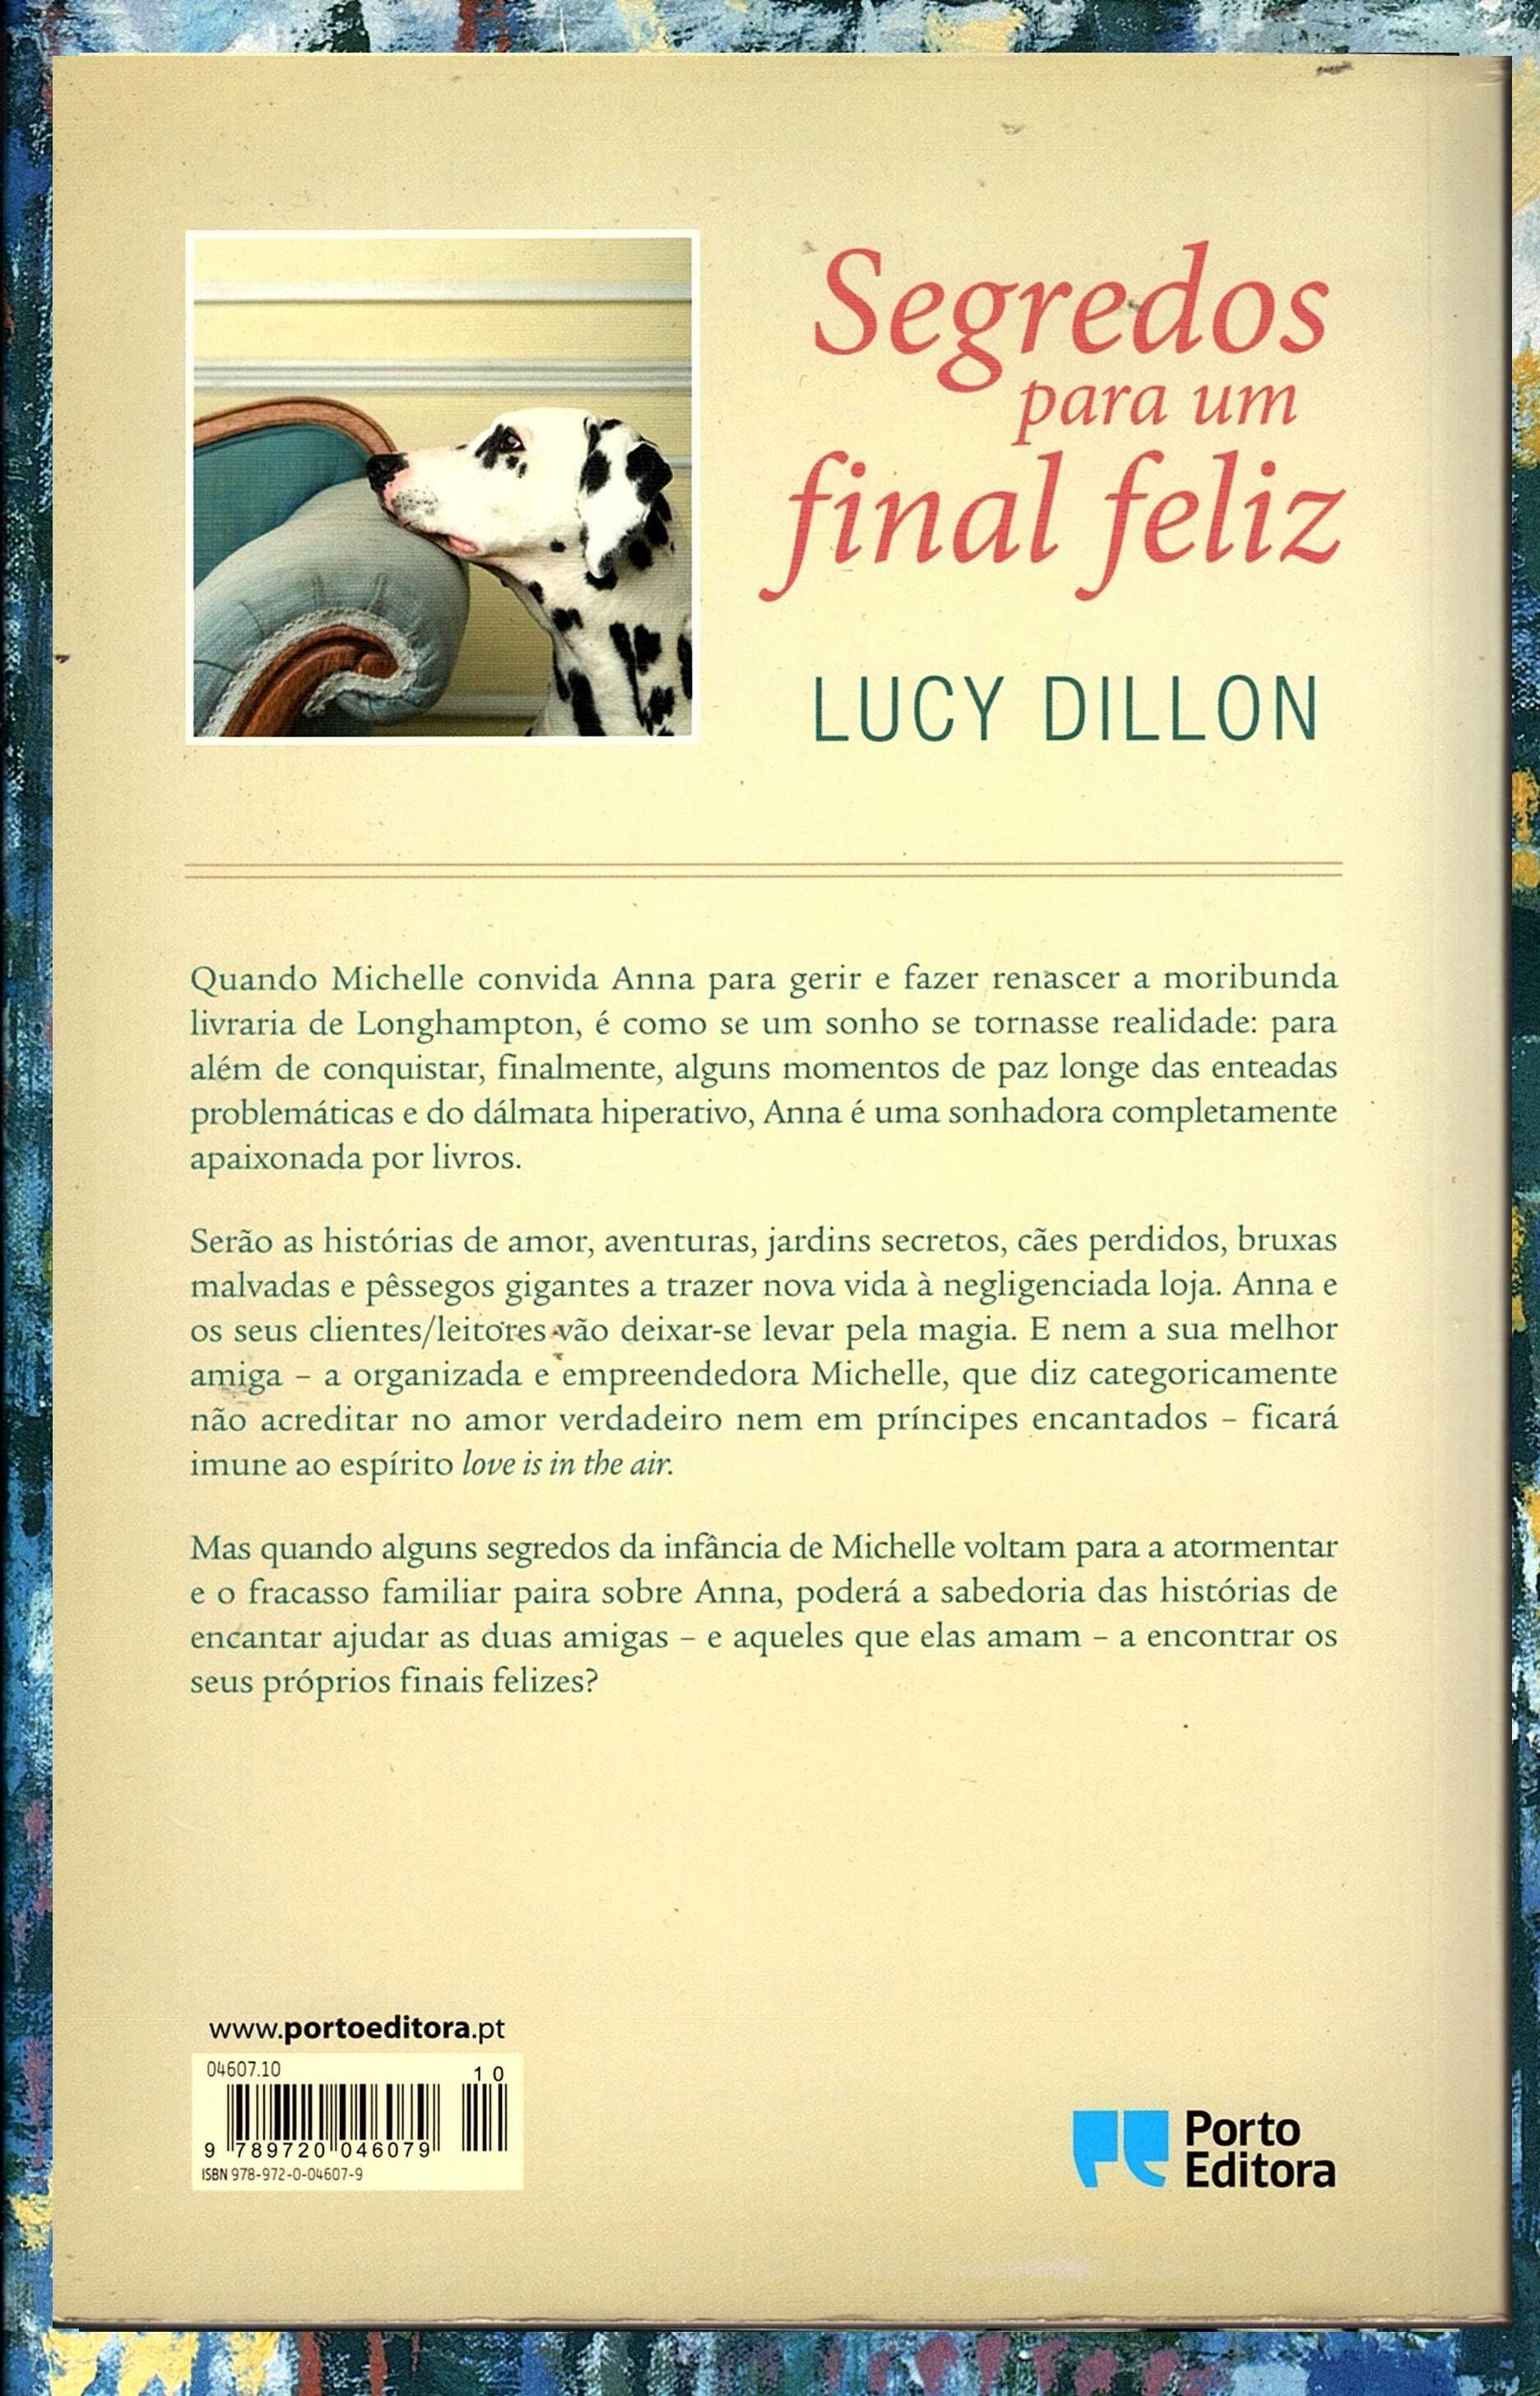 Segredos para um final feliz, de Lucy Dillon